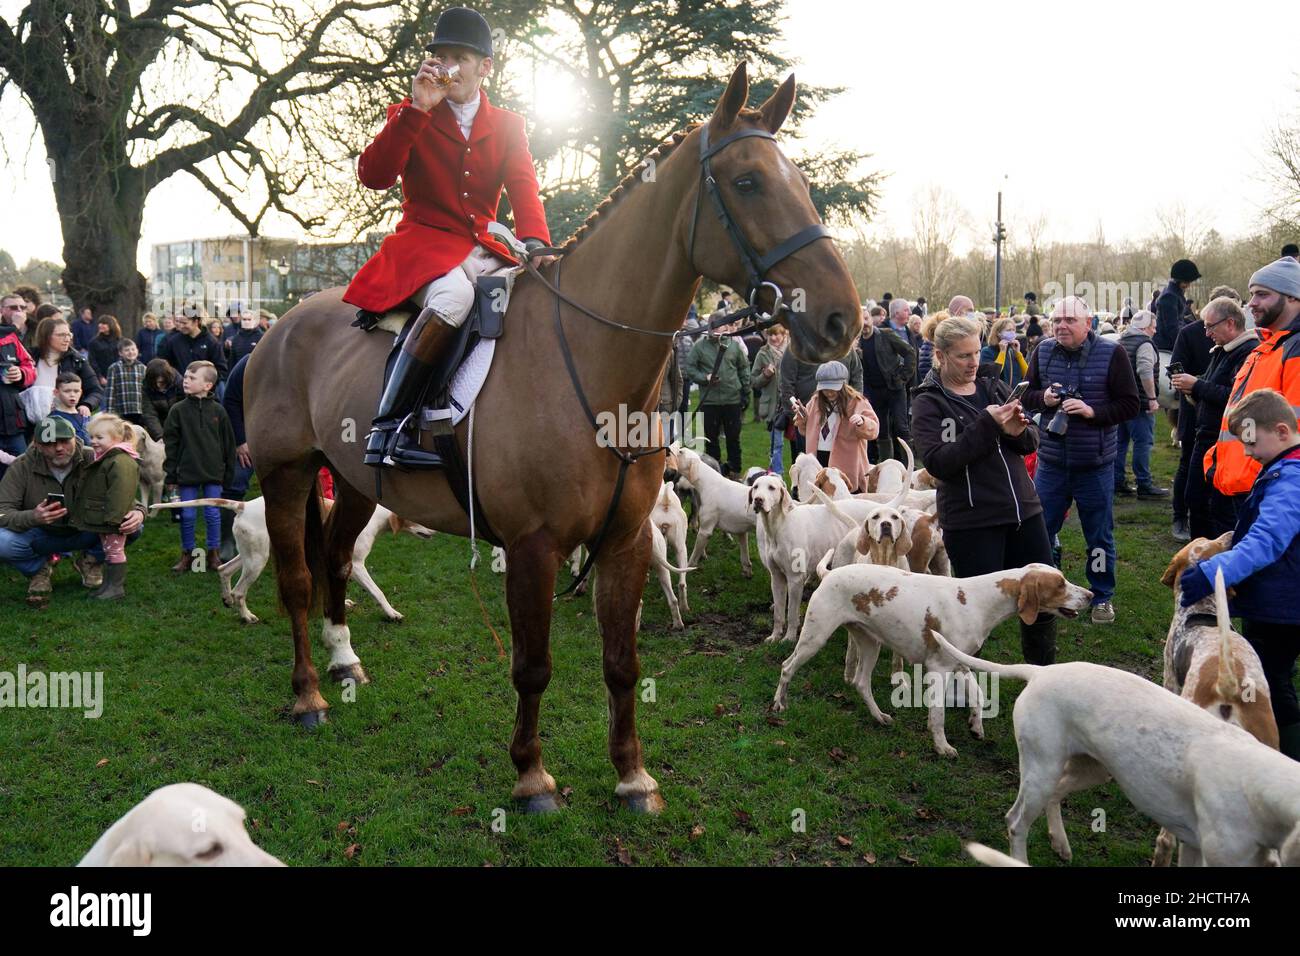 Mitglieder der Öffentlichkeit beobachten die Hunde und Reiter der Quorn Hunt während des Neujahrstages in Melton Mowbray, Leicestershire. Bilddatum: Samstag, 1. Januar 2022. Stockfoto